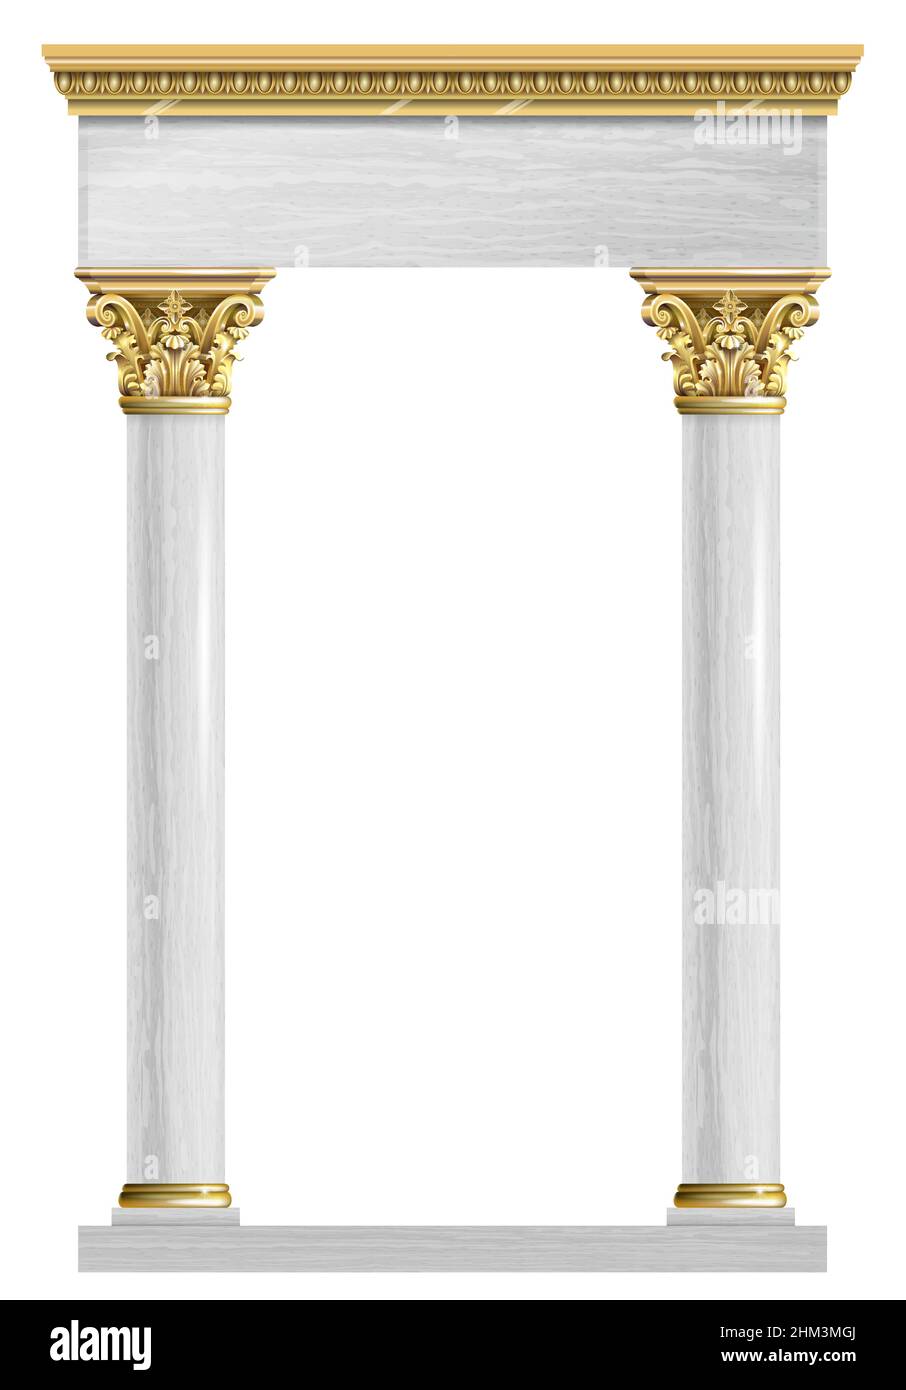 Goldener Luxus klassischer Bogen mit Säulen. Das Portal im Barockstil. Der Eingang zum Feenpalast Stock Vektor